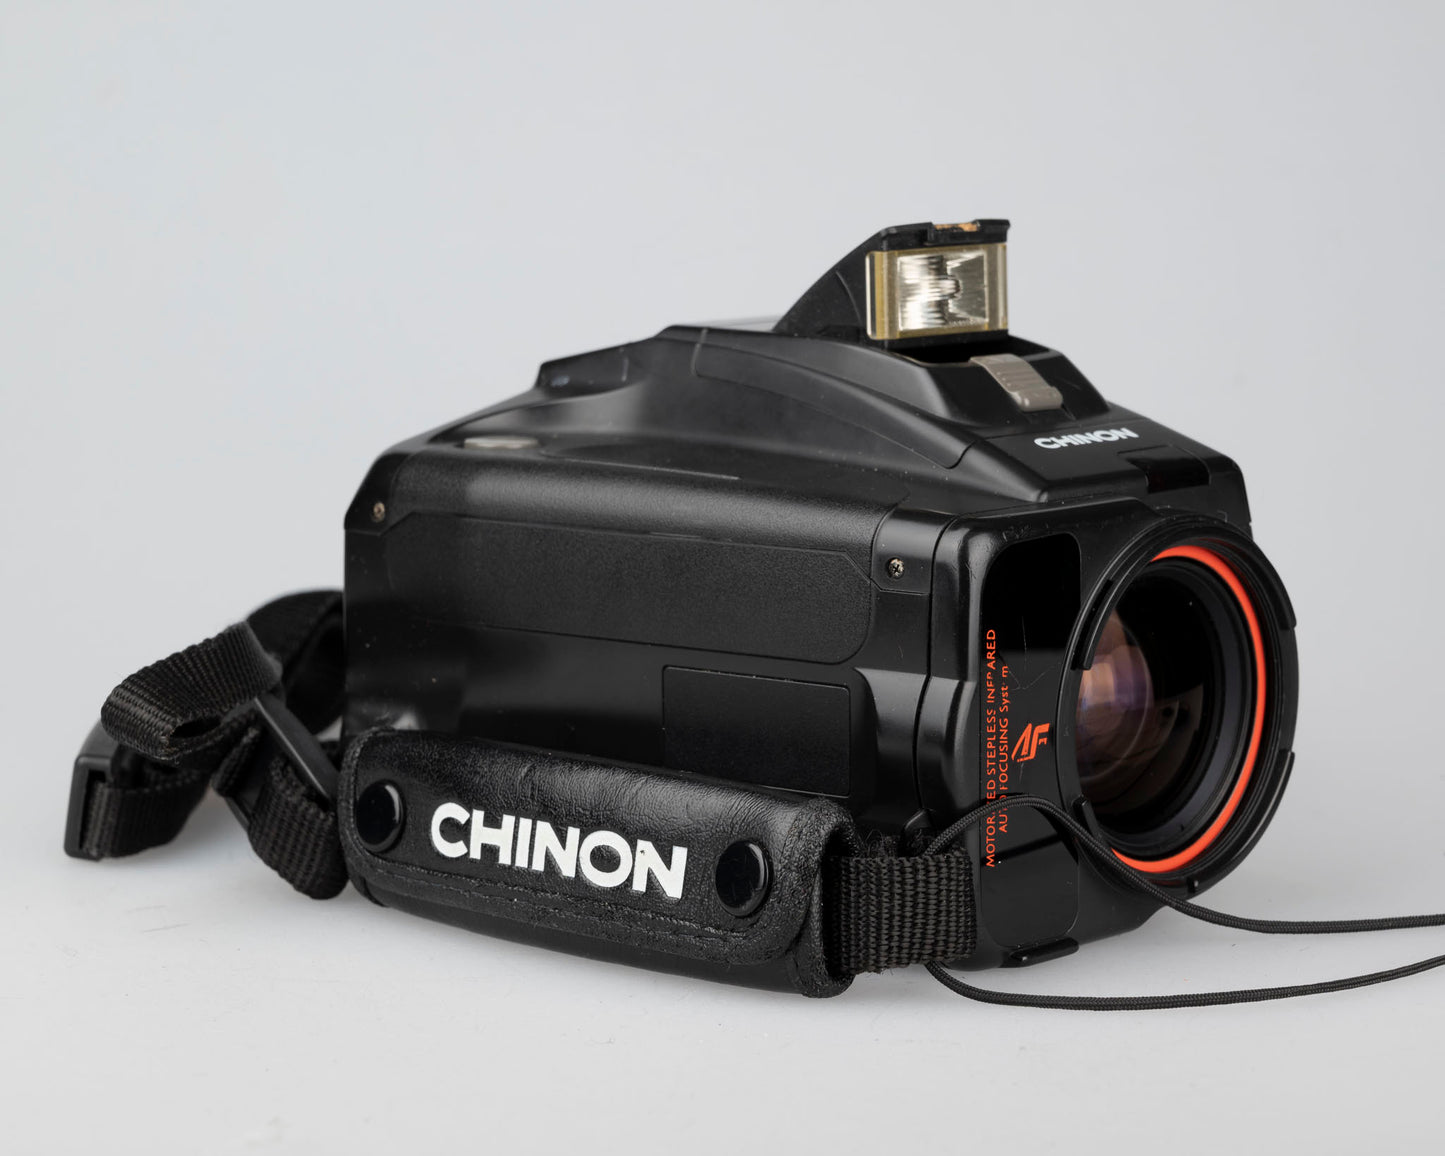 Reflex à film 35 mm Chinon Genesis 'bridge' avec objectif 35-80 mm (série 1082134)